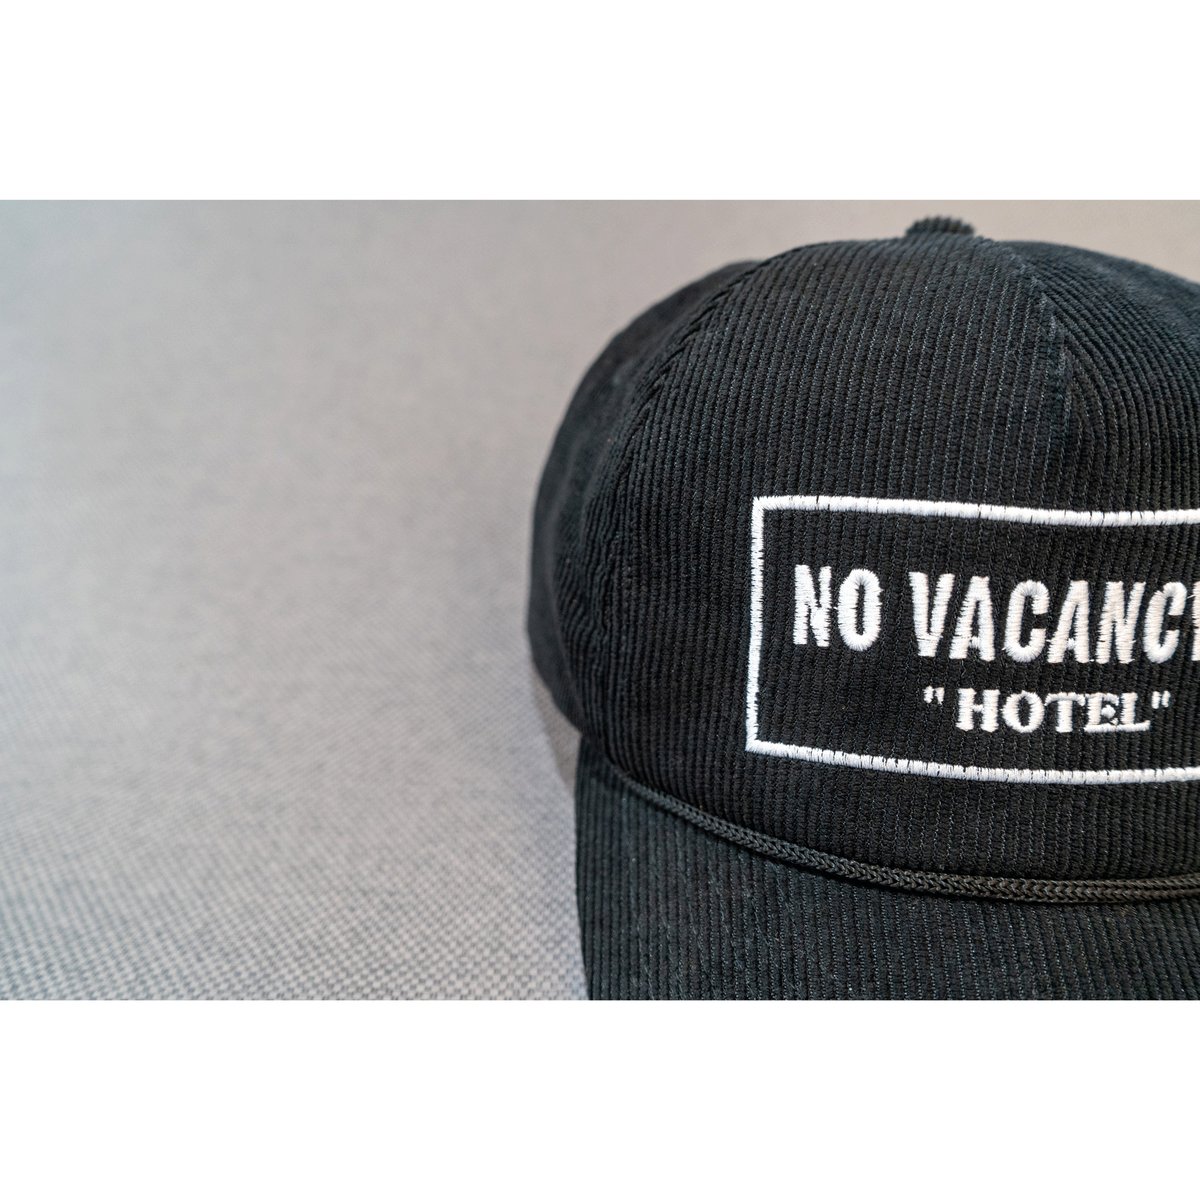 HOTEL ORIGINAL CAP【NO VACANCY】